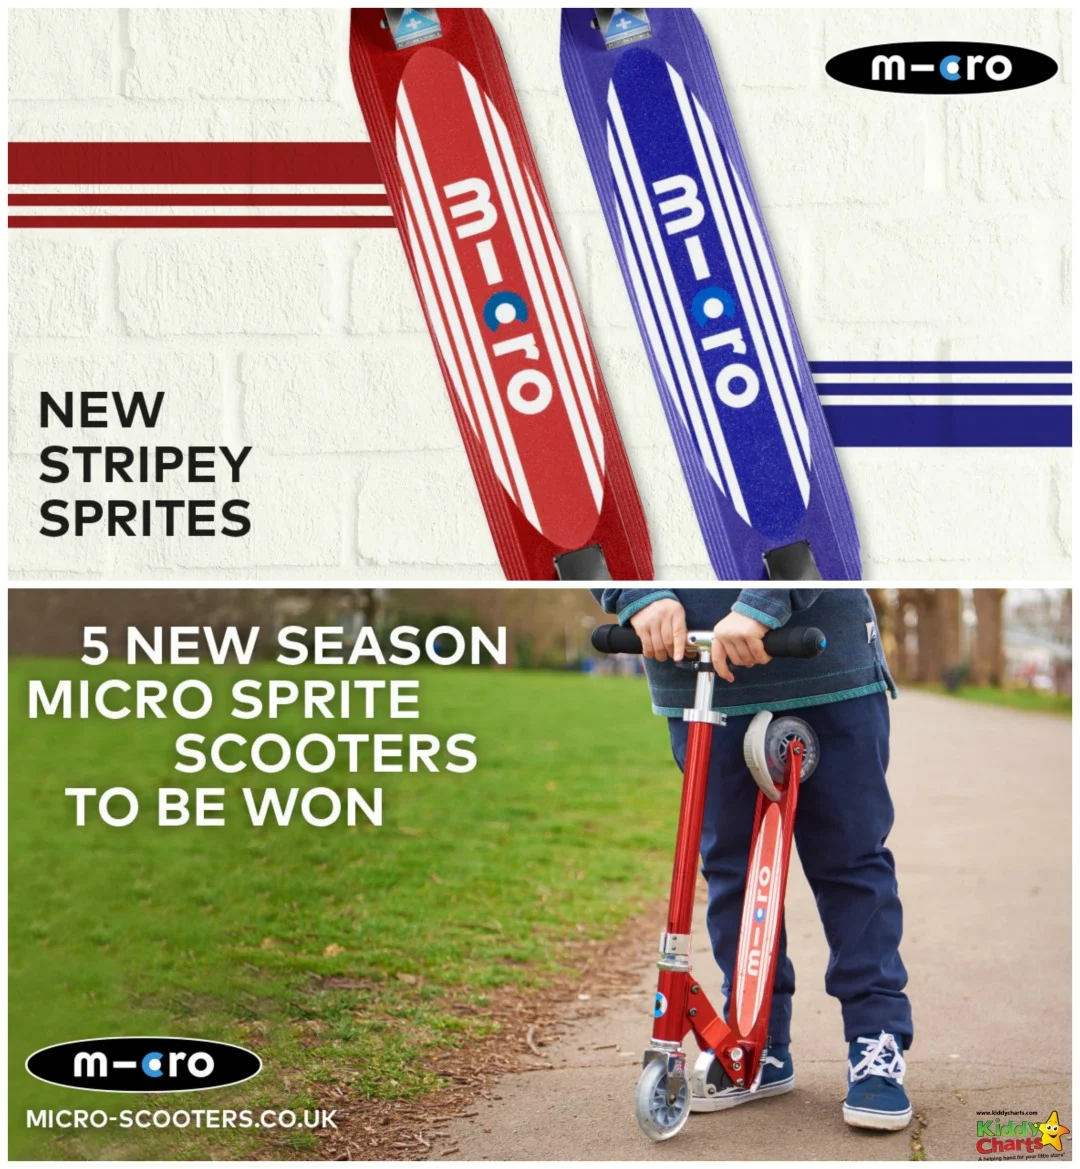 5 New Season Micro Sprites to be won!